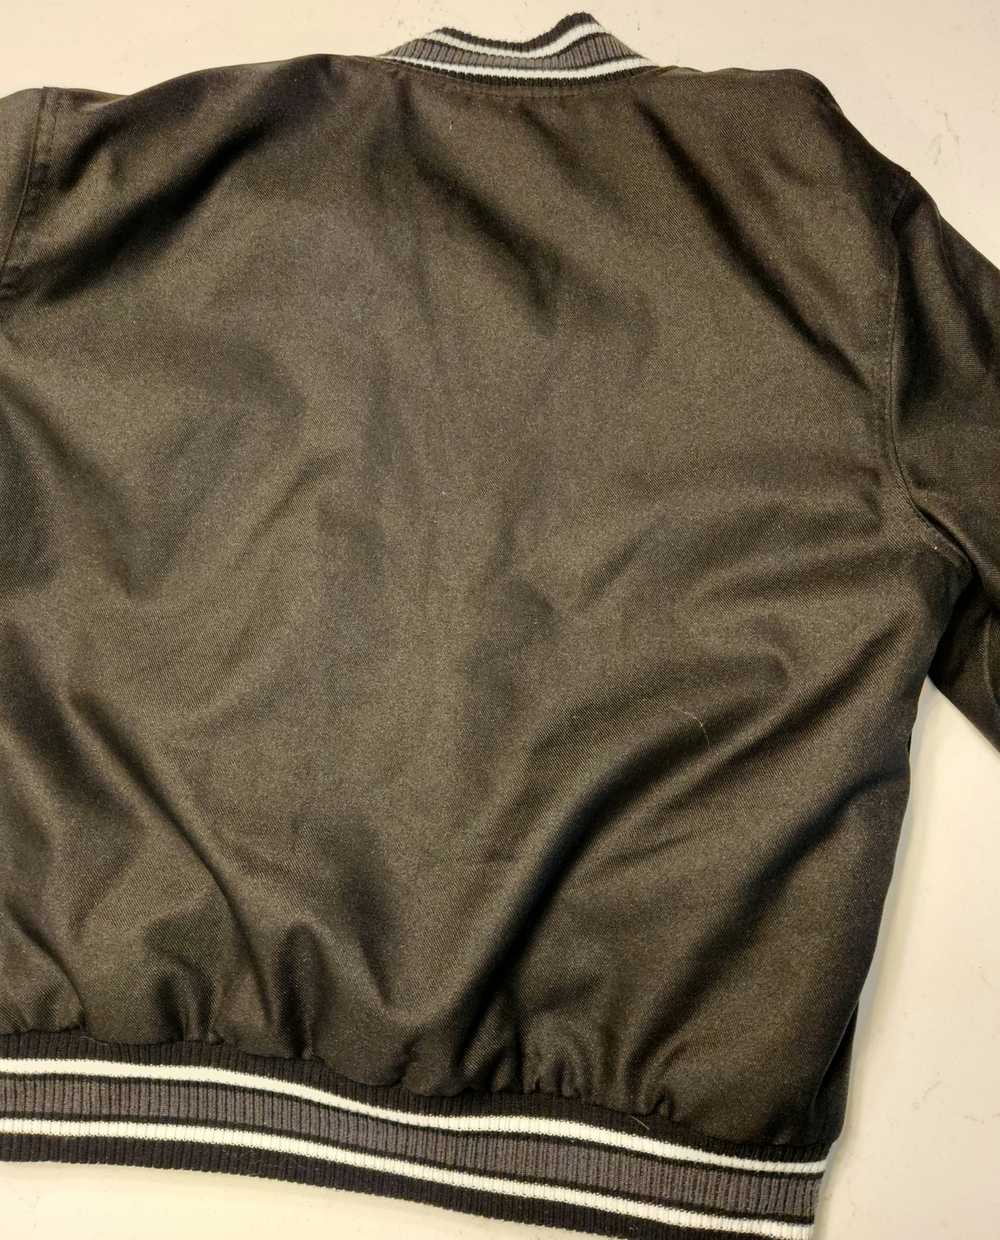 Jh Design × NBA Jh design bomber jacket black - image 2